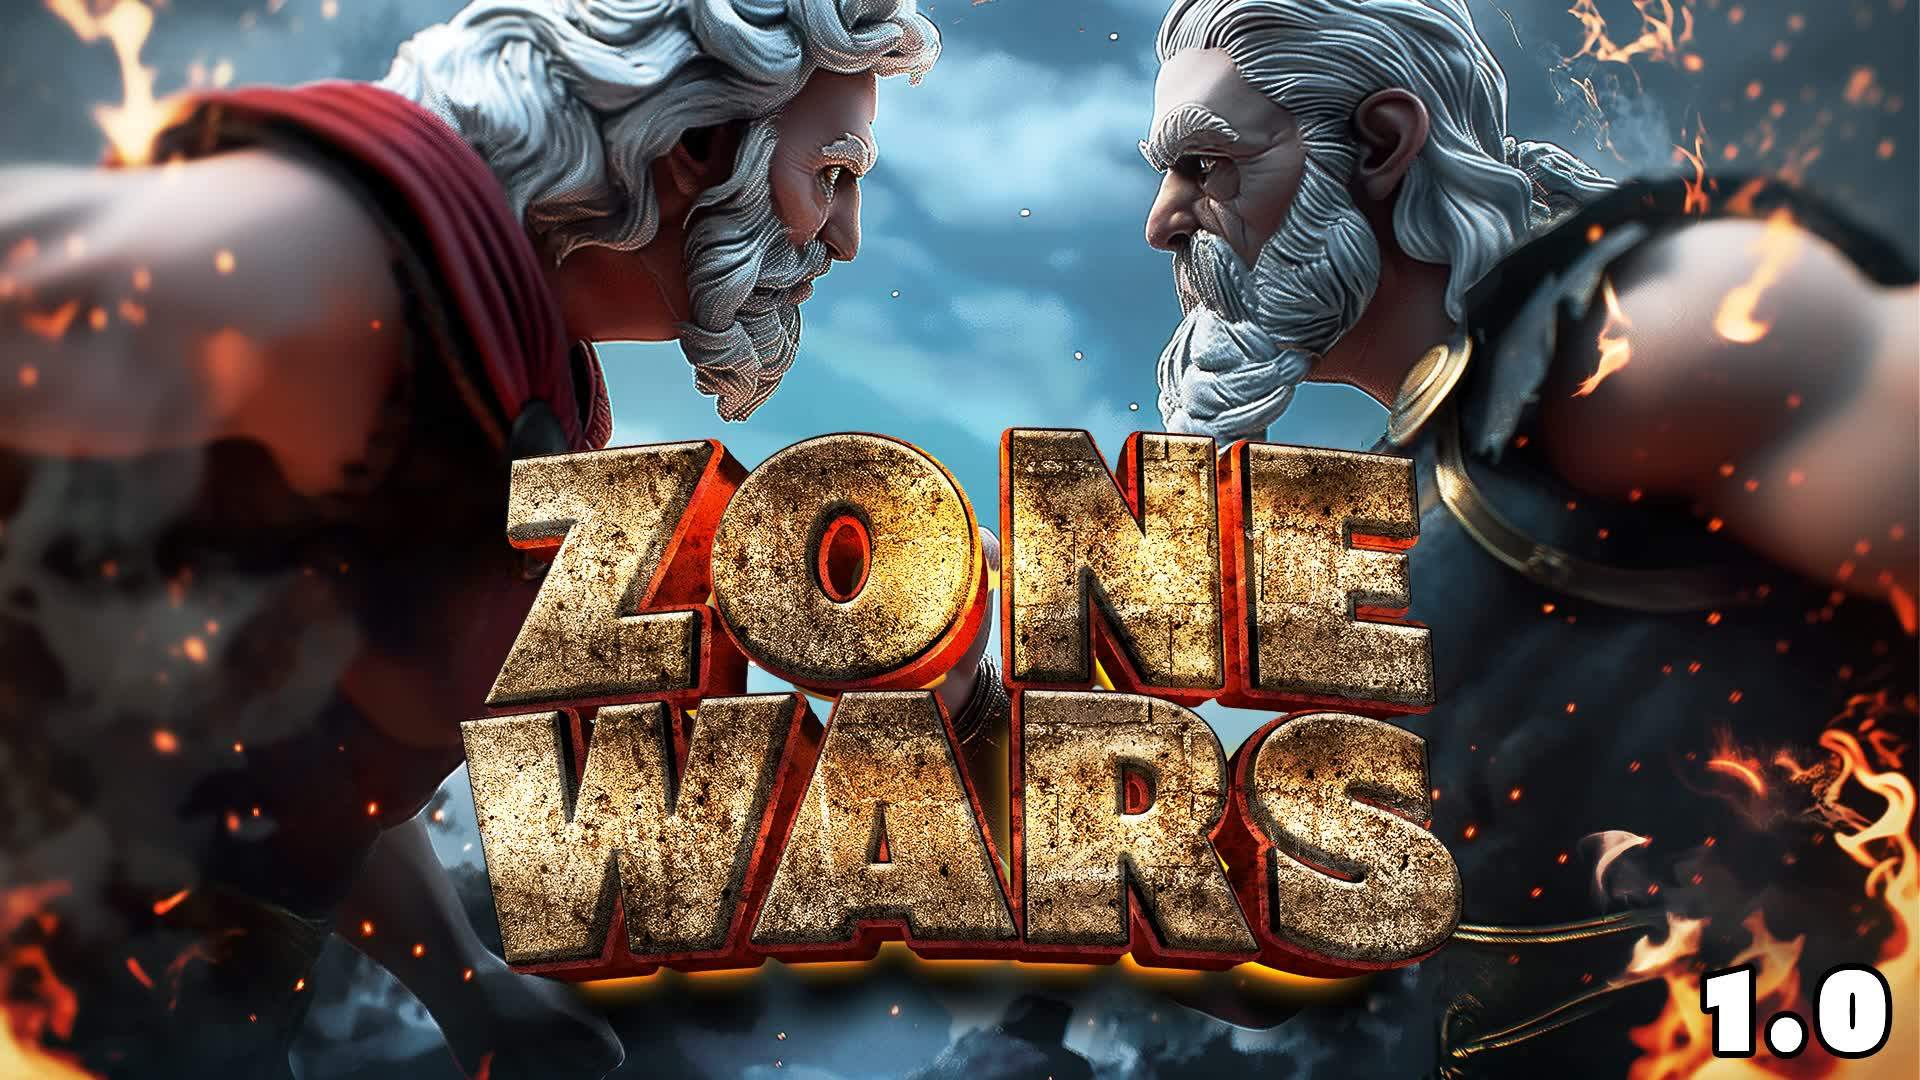 Zone Wars : Mortal's Battle (Solos)